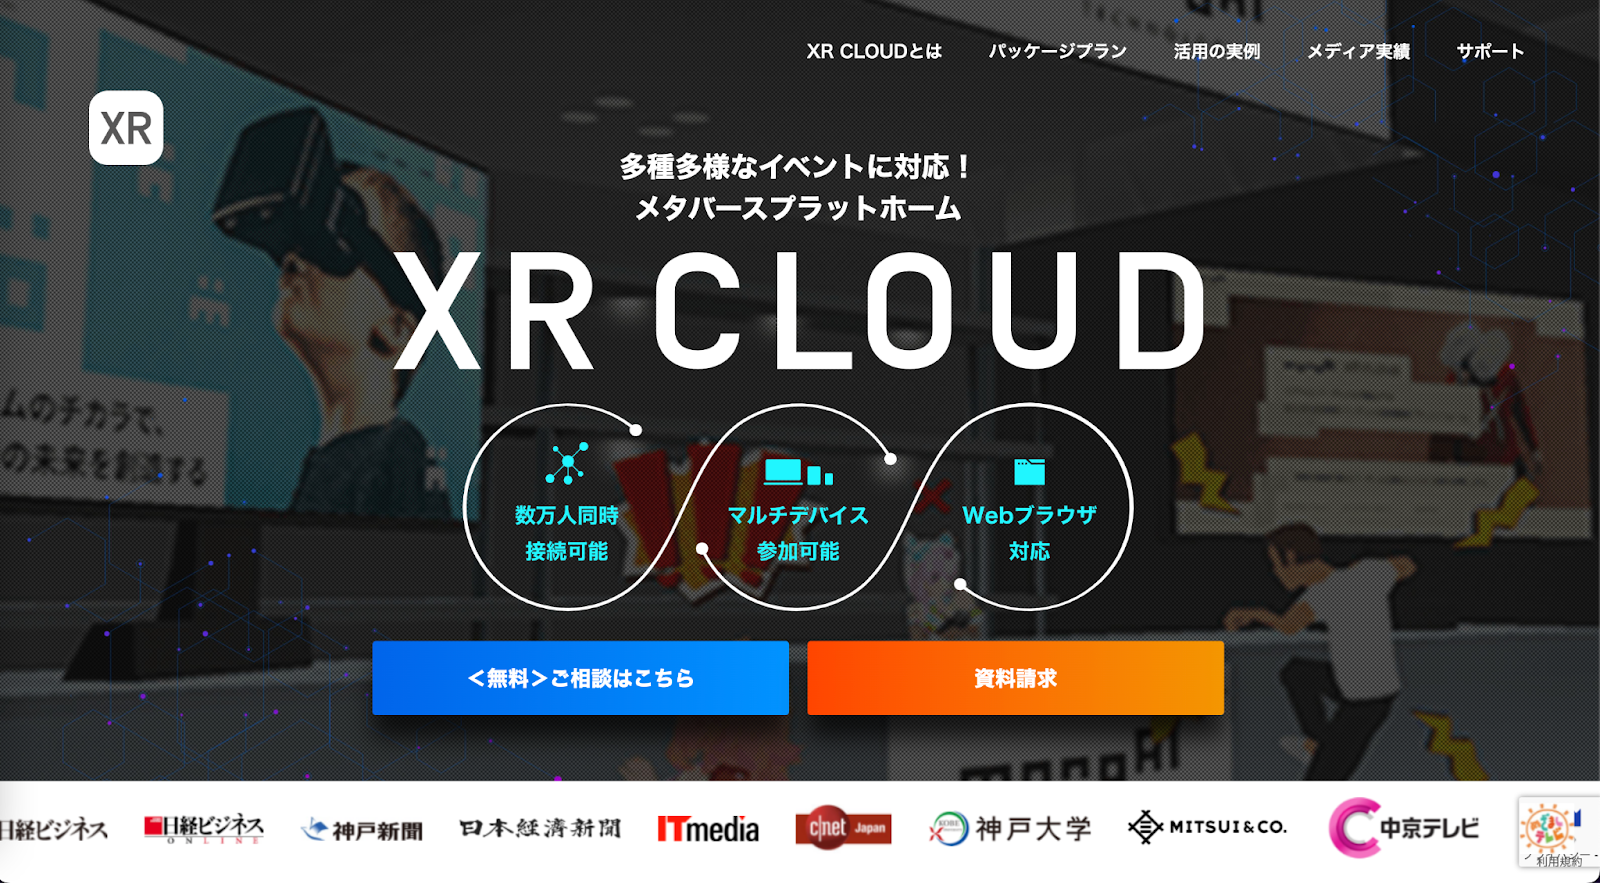 XR CLOUD：大人数同時接続可能なバーチャル空間プラットフォーム